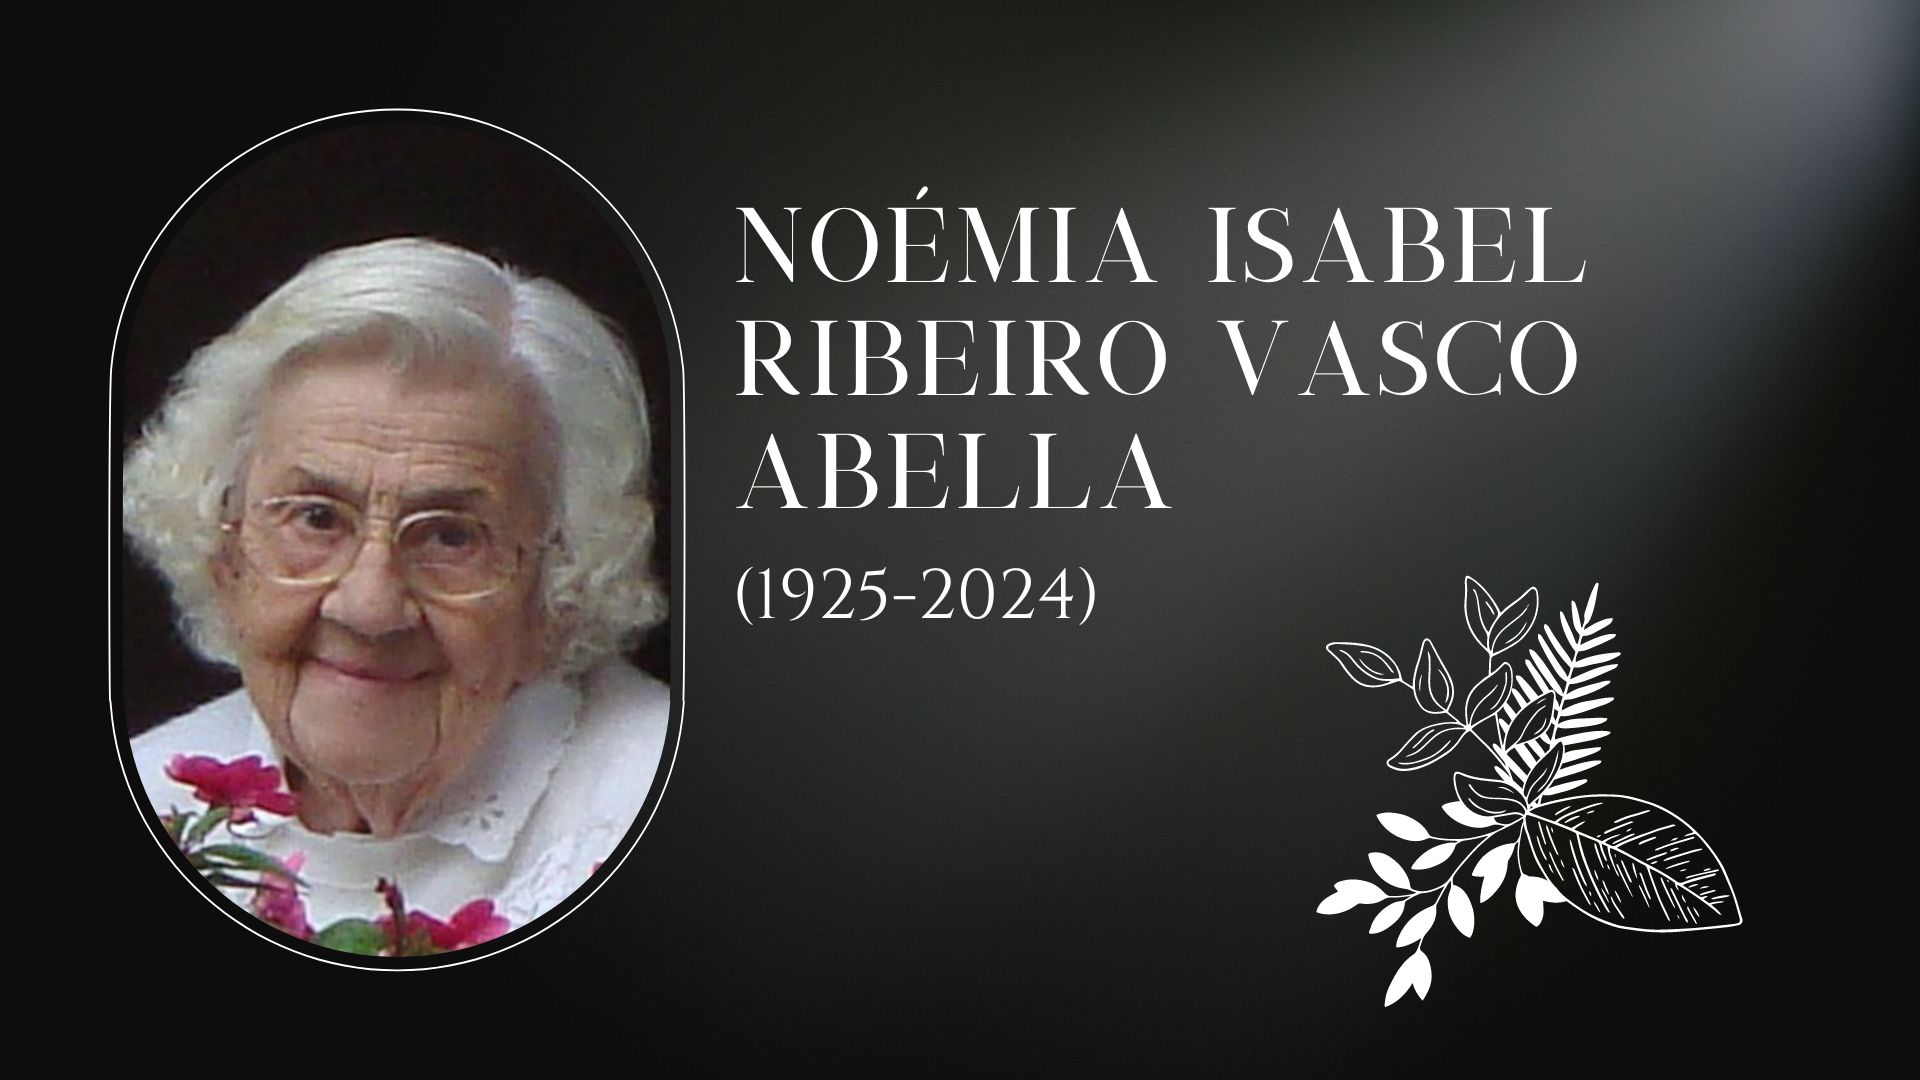 Noémia Isabel Ribeiro Vasco Abella (1925-2024)